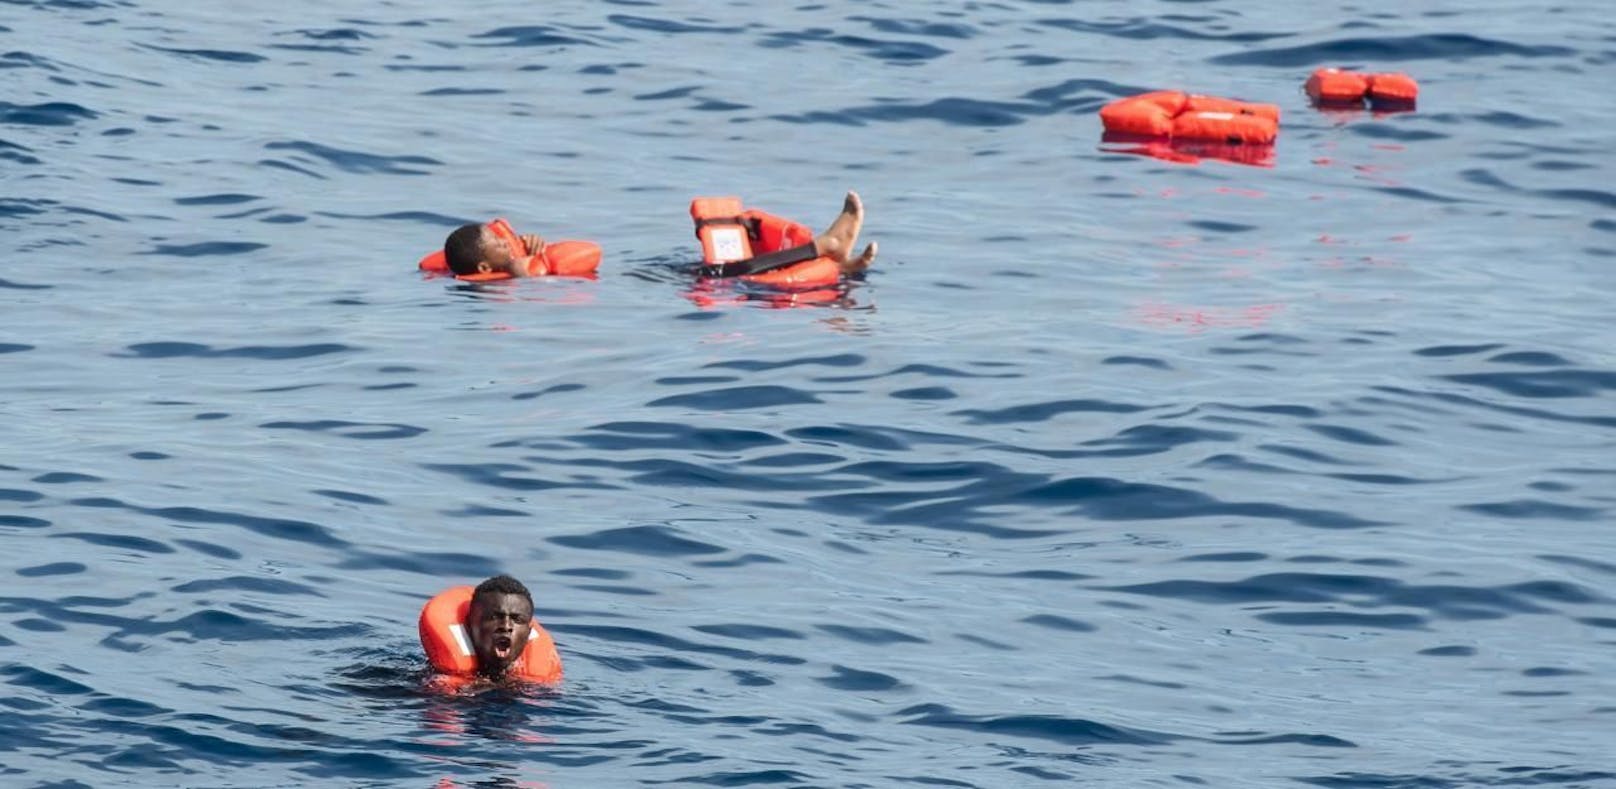 117 Vermisste nach Boots-Unglück im Mittelmeer